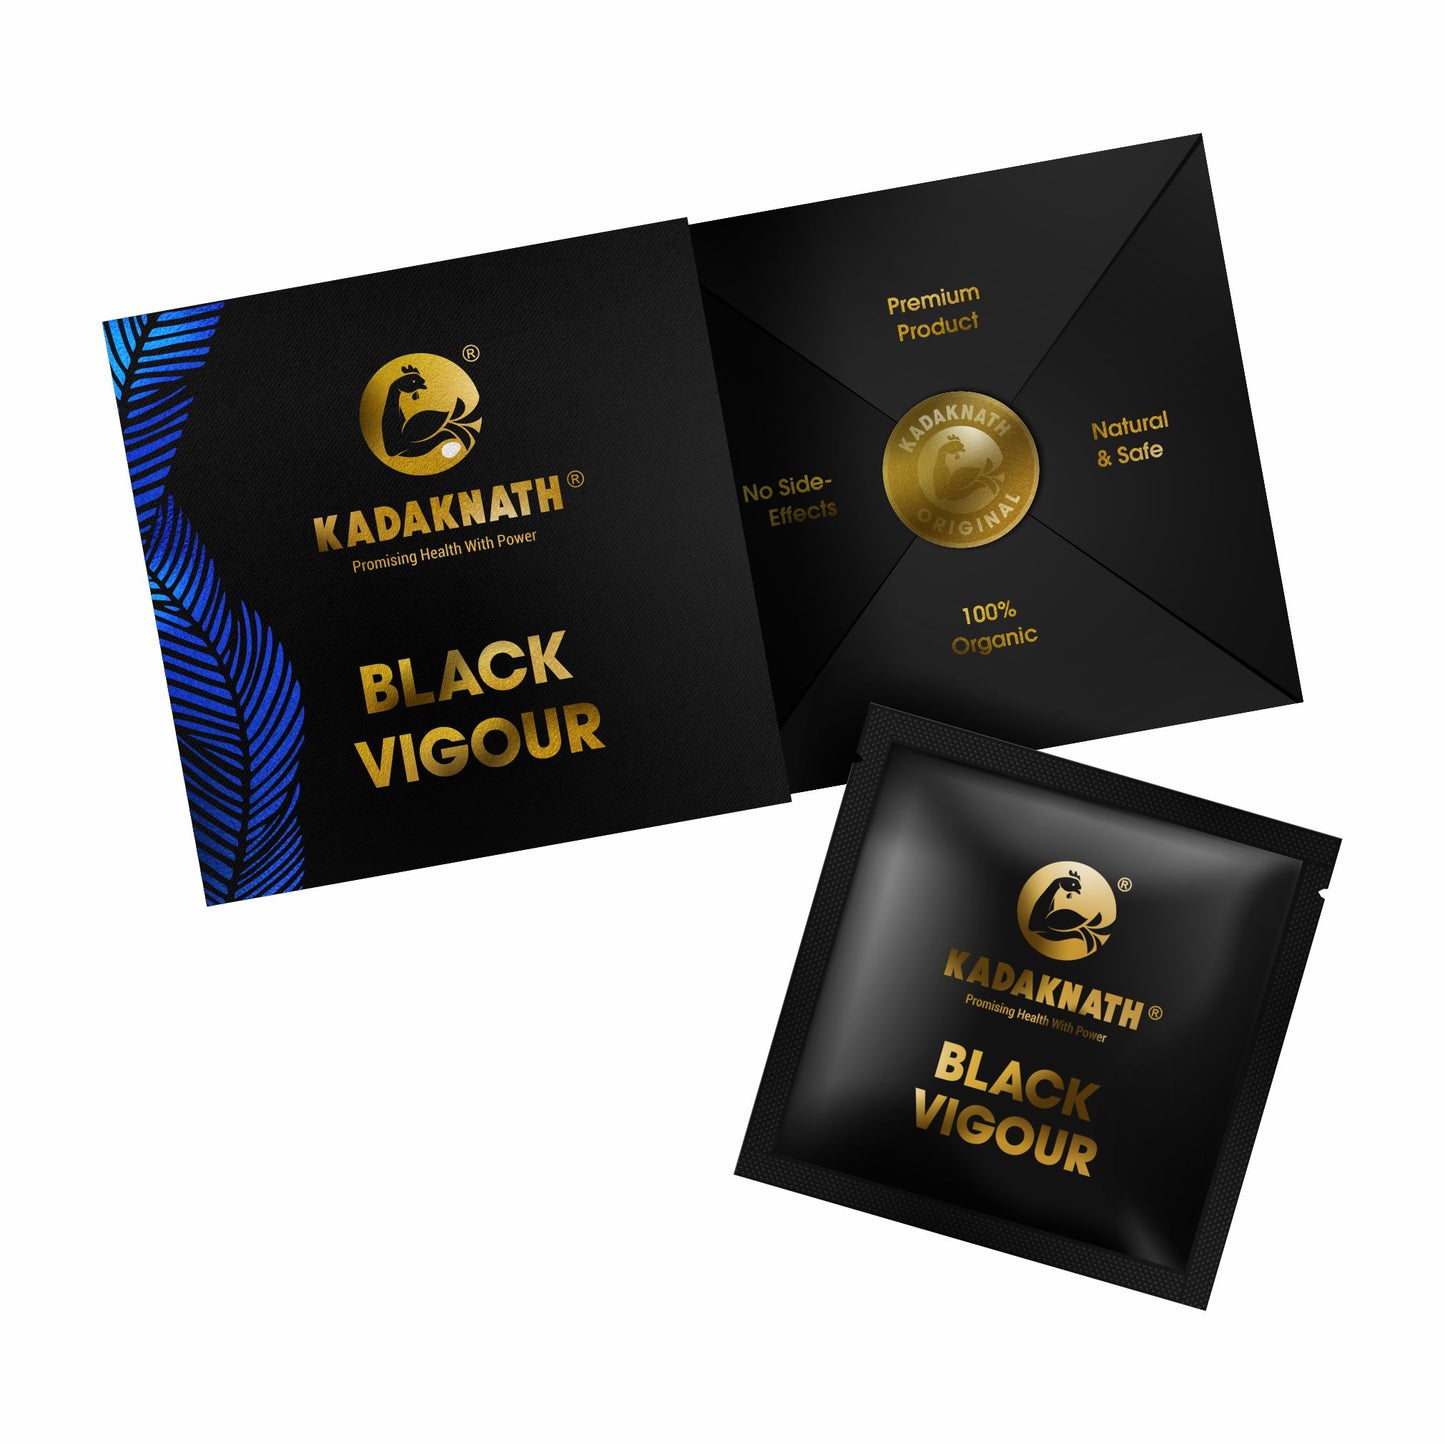 Kadaknath Black Vigour Powder For Instant Strength, Stamina And Power 10gm Single Dose For Men